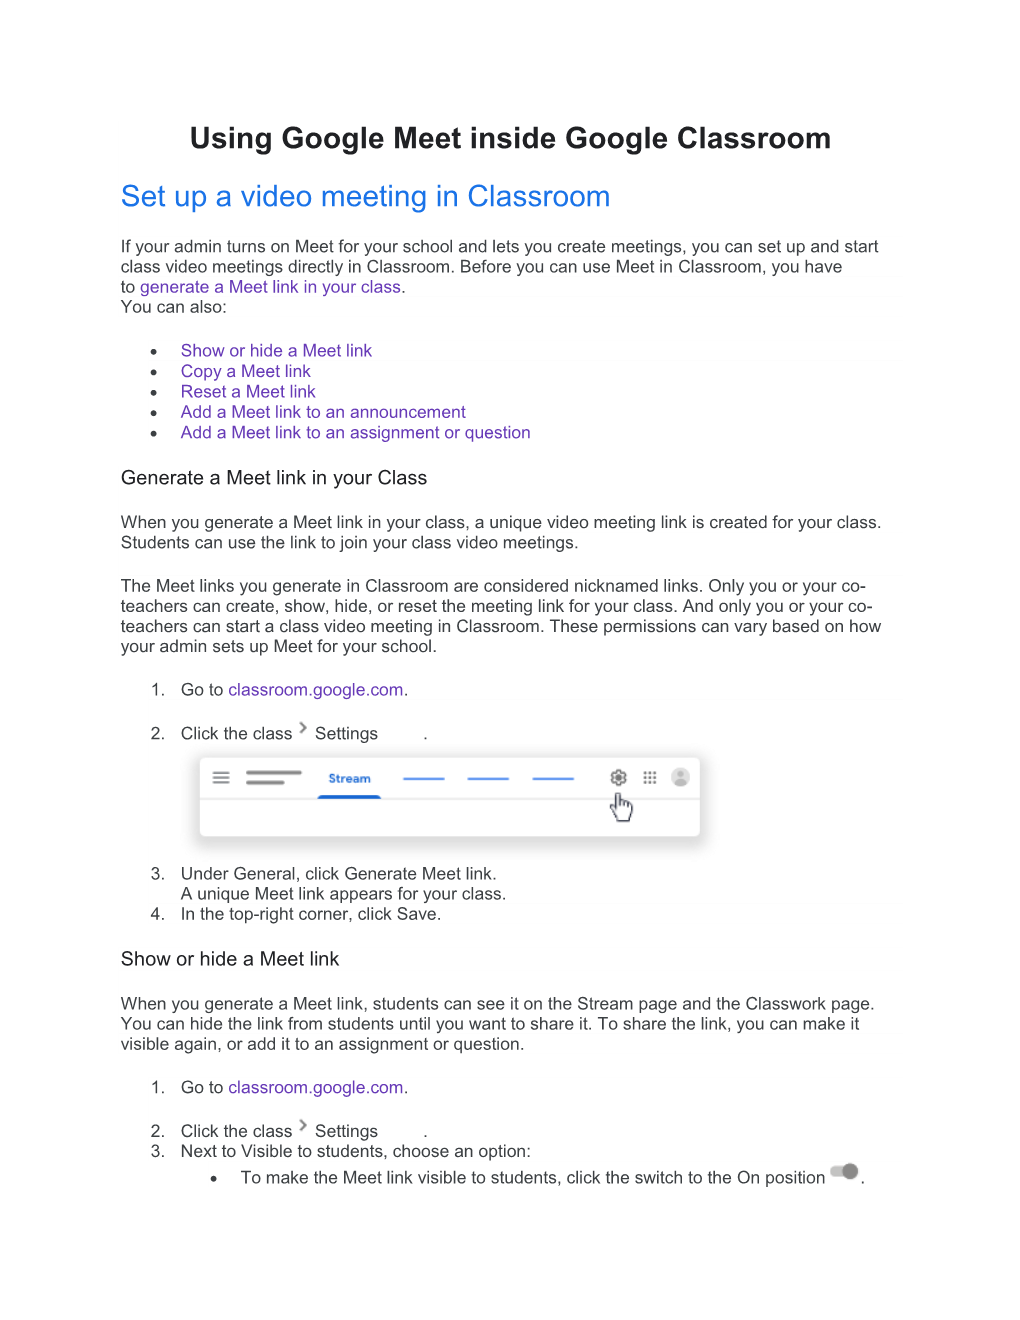 Using Google Meet Inside Google Classroom Set up a Video Meeting in Classroom